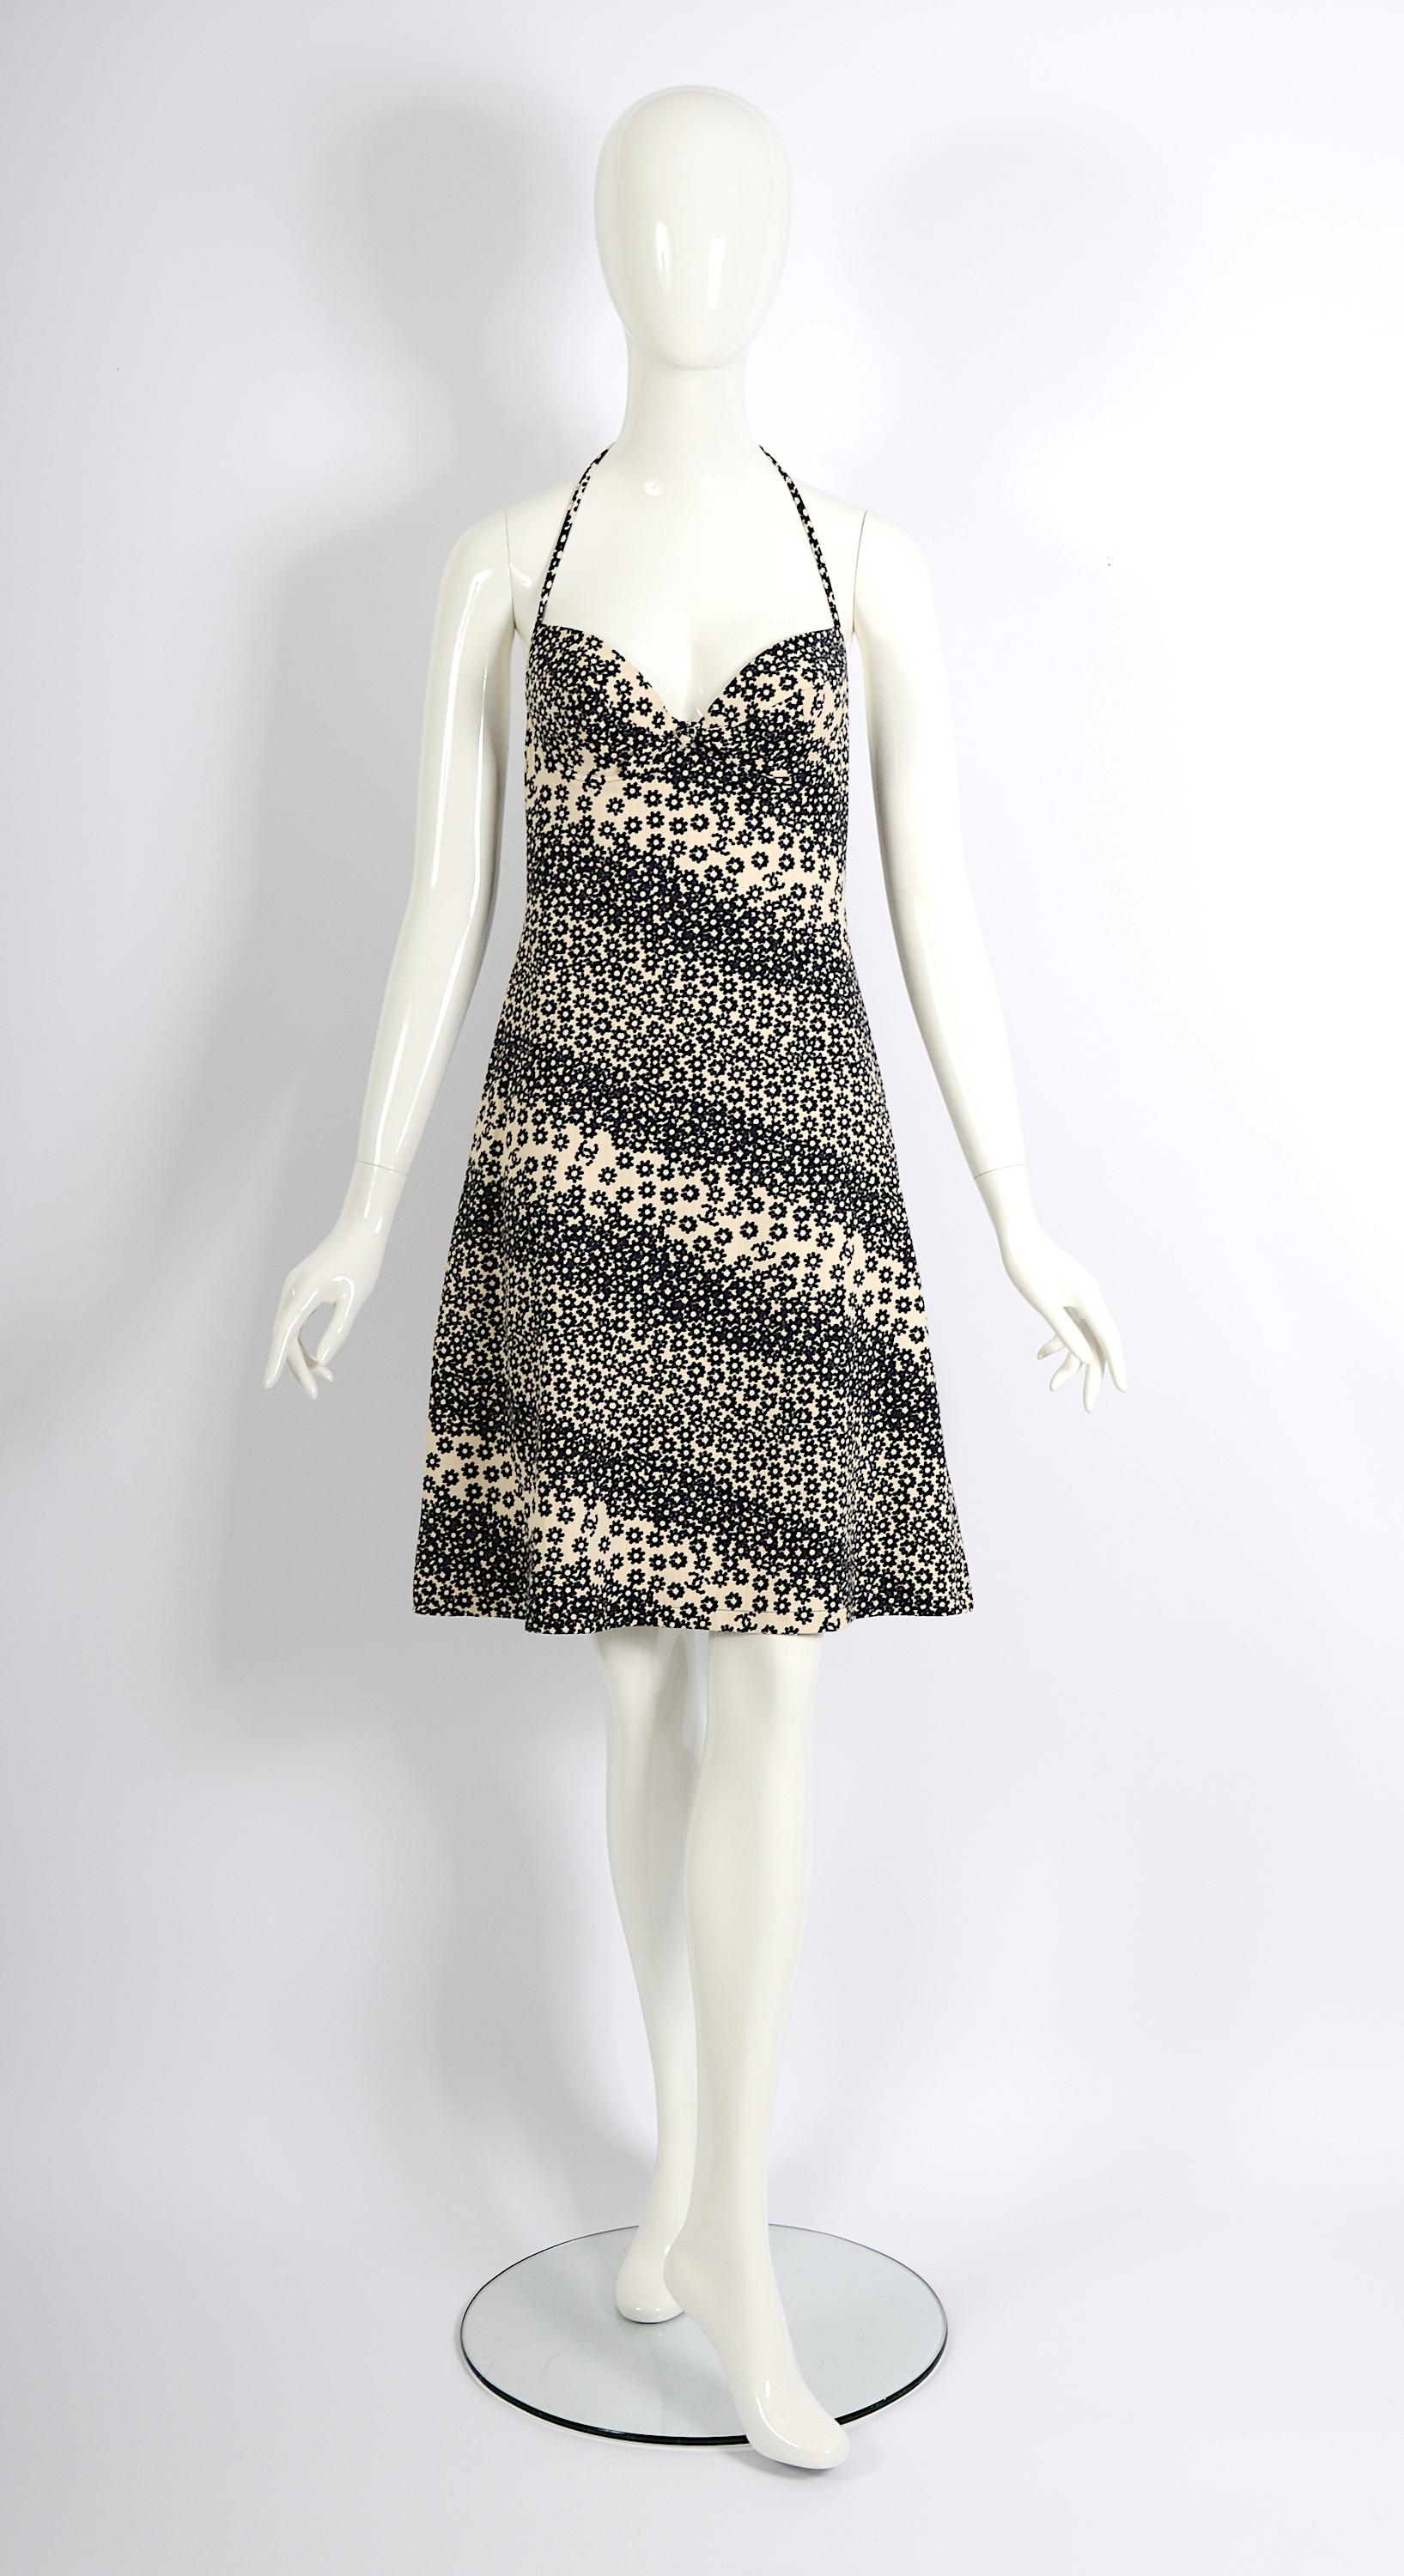 Kleid aus der kultigen Chanel by Karl Lagerfeld Spring-Summer 2003 Collection
Neckholder-Top/Trägerloses Kleid mit verstellbarem String.
Unglaublich, dass dieses Kleid auch nach 20 Jahren noch aktuell ist und den zeitlosen Charakter seines Designs